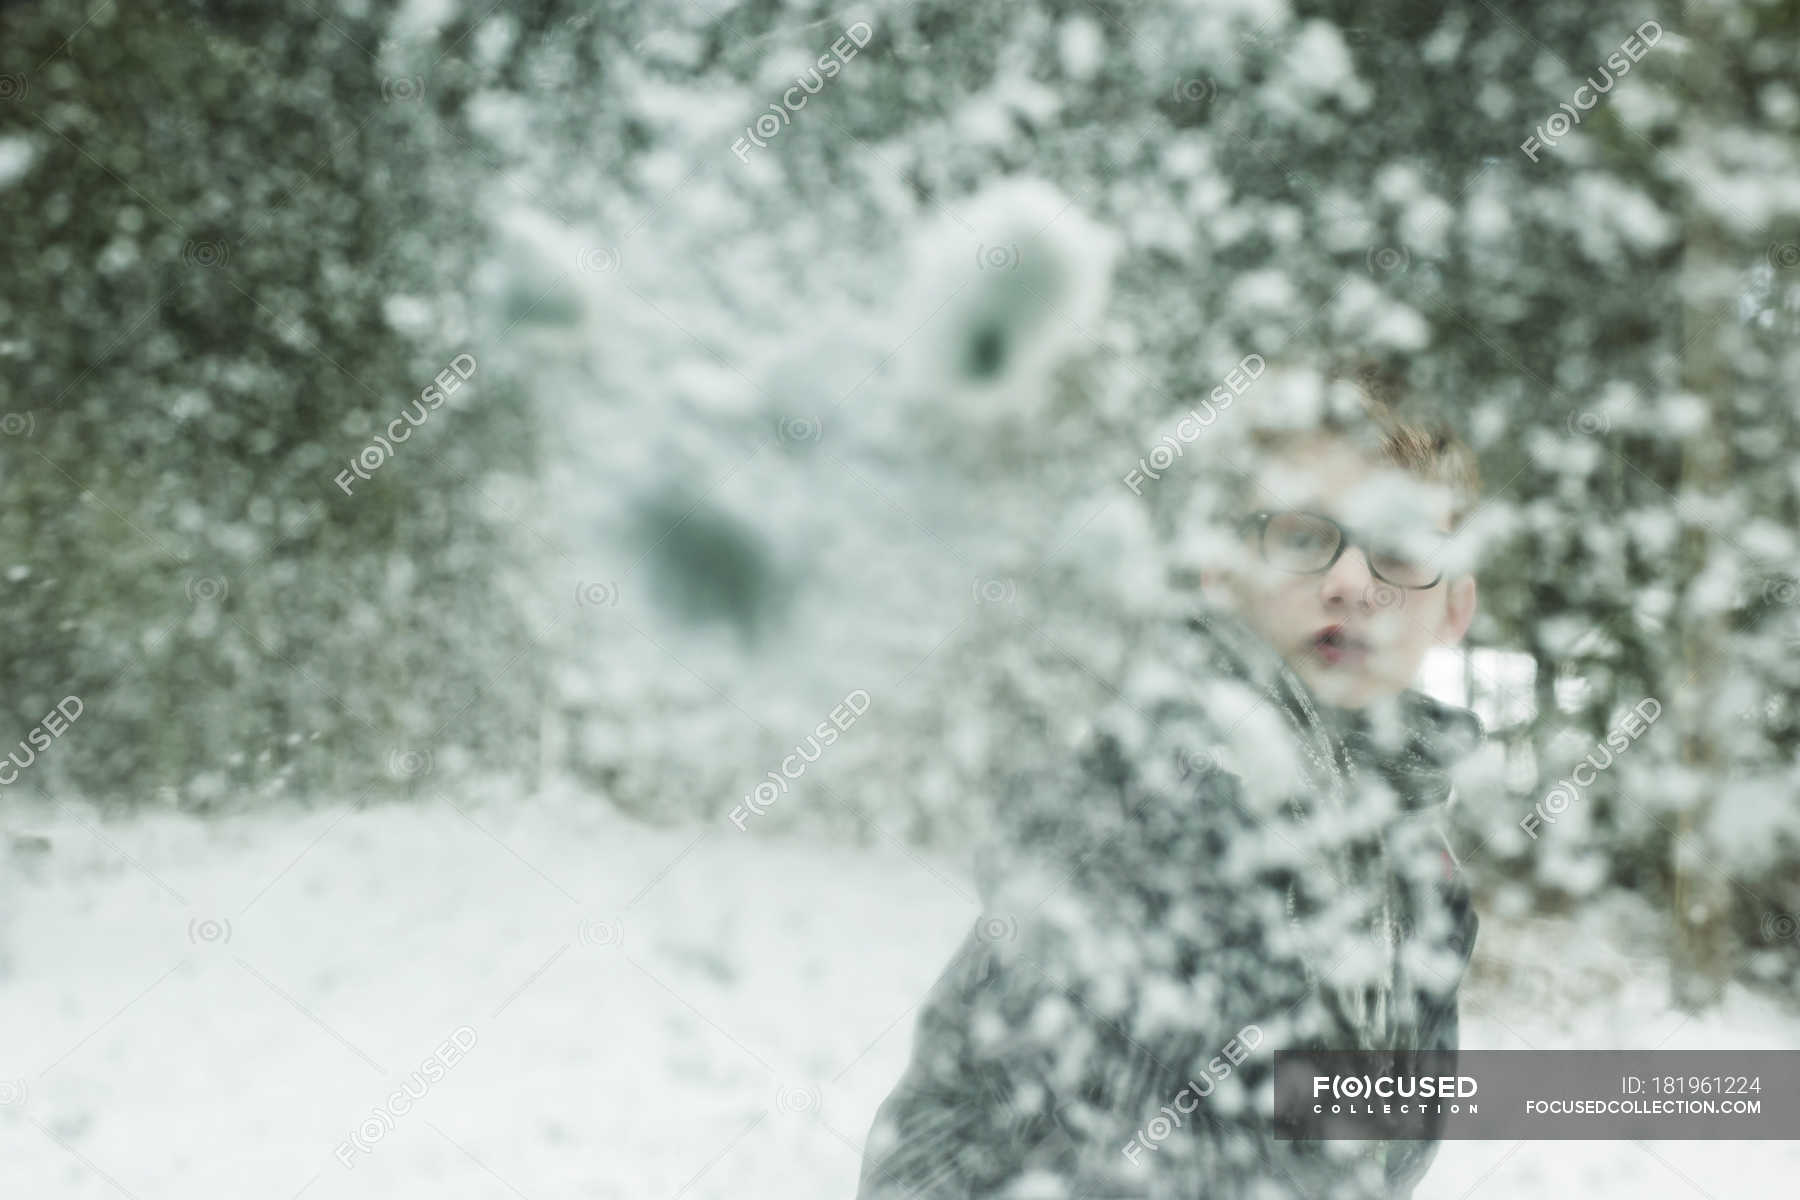 В окно кидают снежки. Кинуть снежок. Мальчик кидает снежок в камеру. Снежок кинутый в стекло. Снежок кинули в окно\.